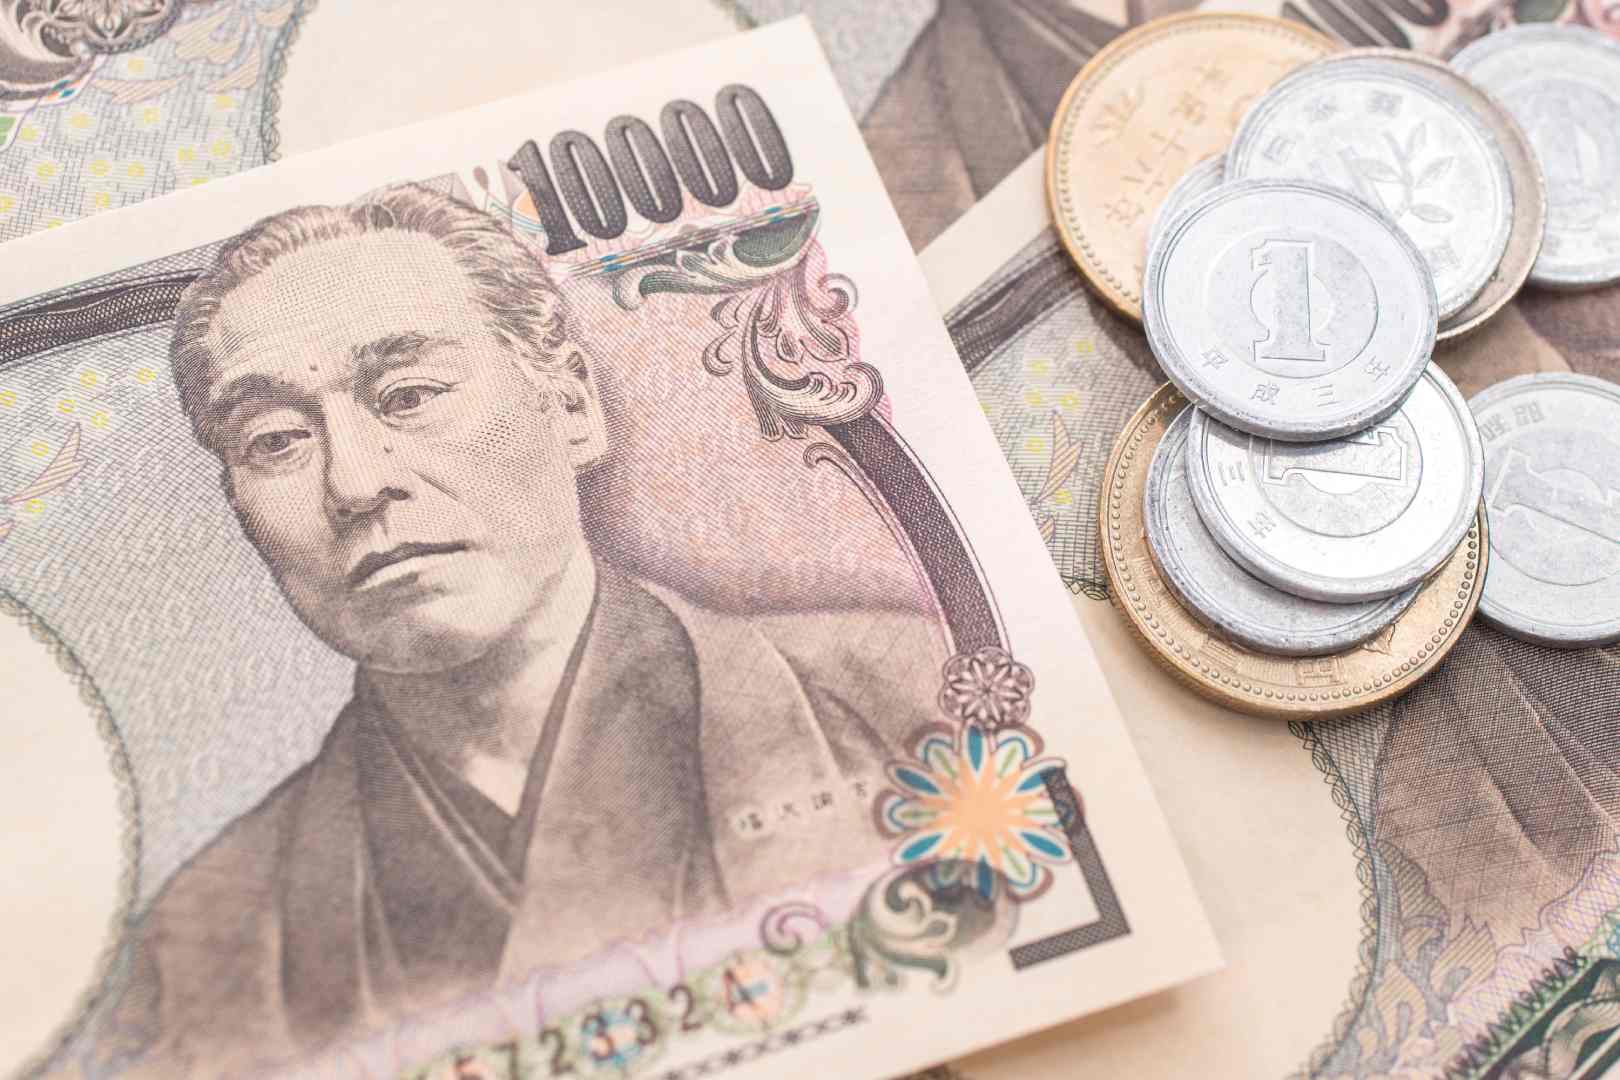 The Yen loses battle against its safe haven title